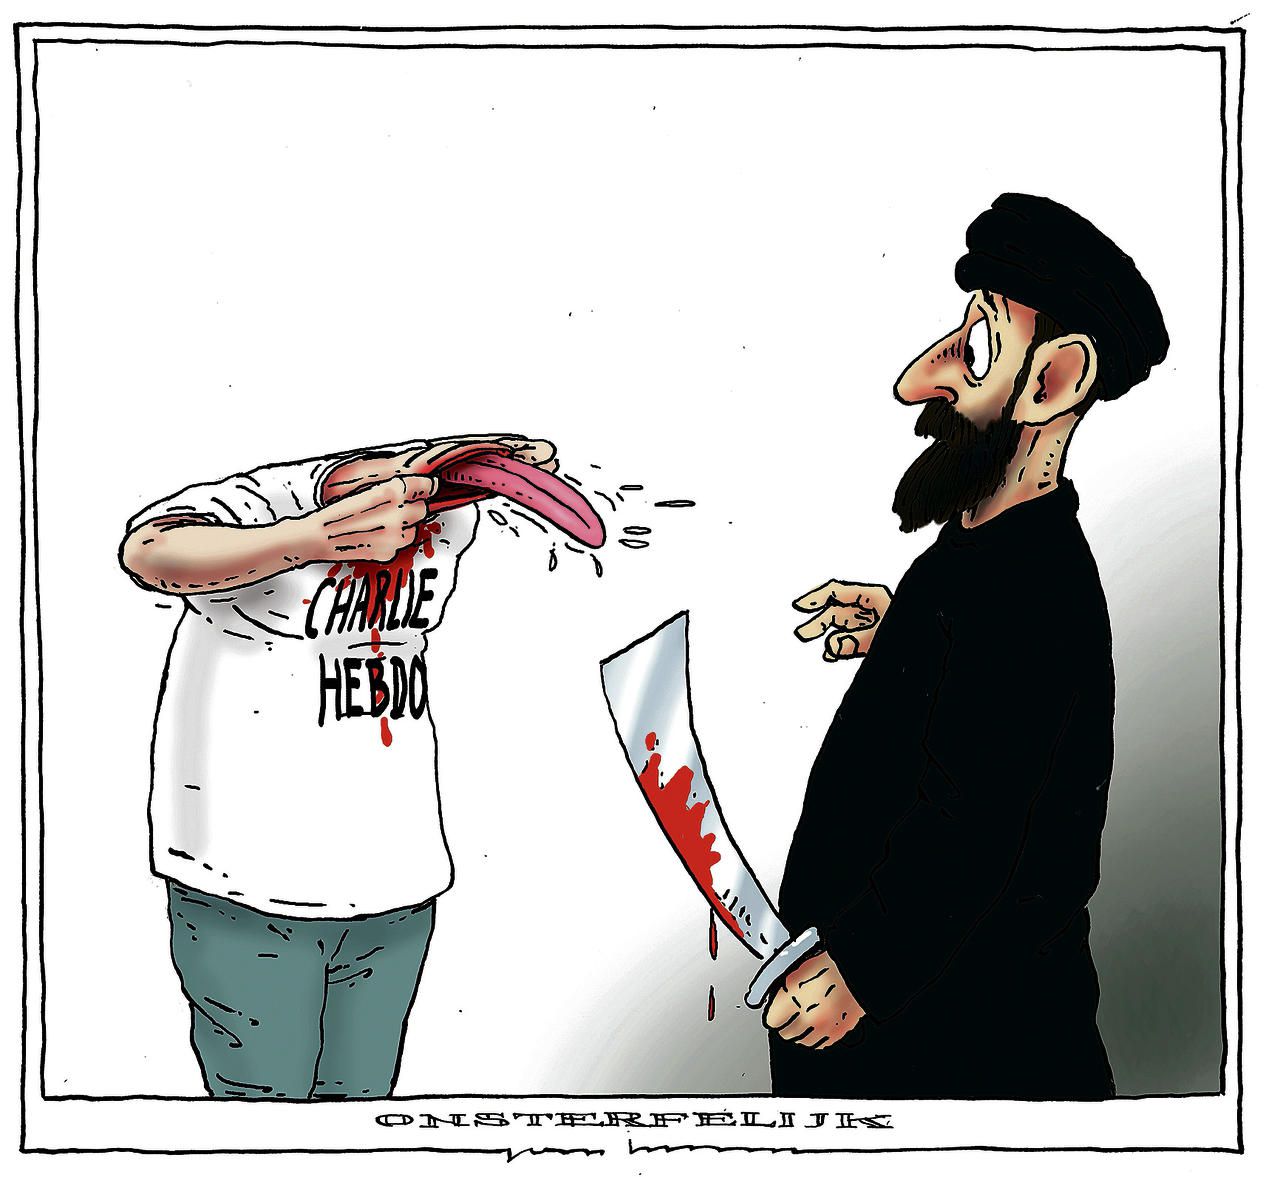 1: Onsterfelijk; Charlie Hebdo, nooit opzij. Joep Bertrams. Gepubliceerd in diverse kranten in januari.